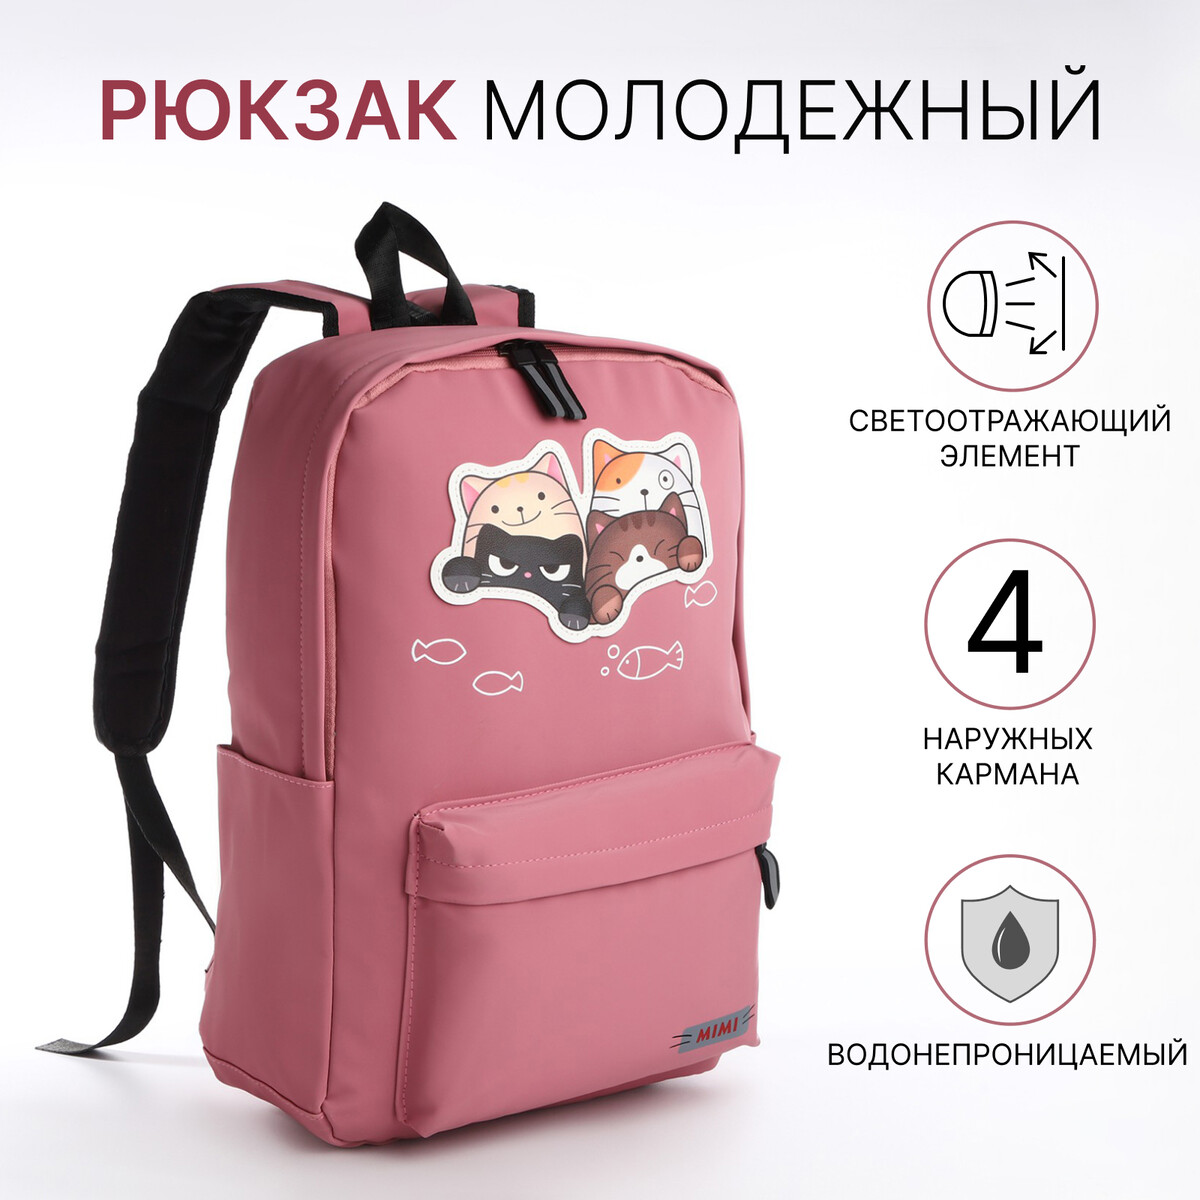 Рюкзак молодежный из текстиля на молнии, 4 кармана, цвет розовый рюкзак молодежный из текстиля 4 кармана розовый